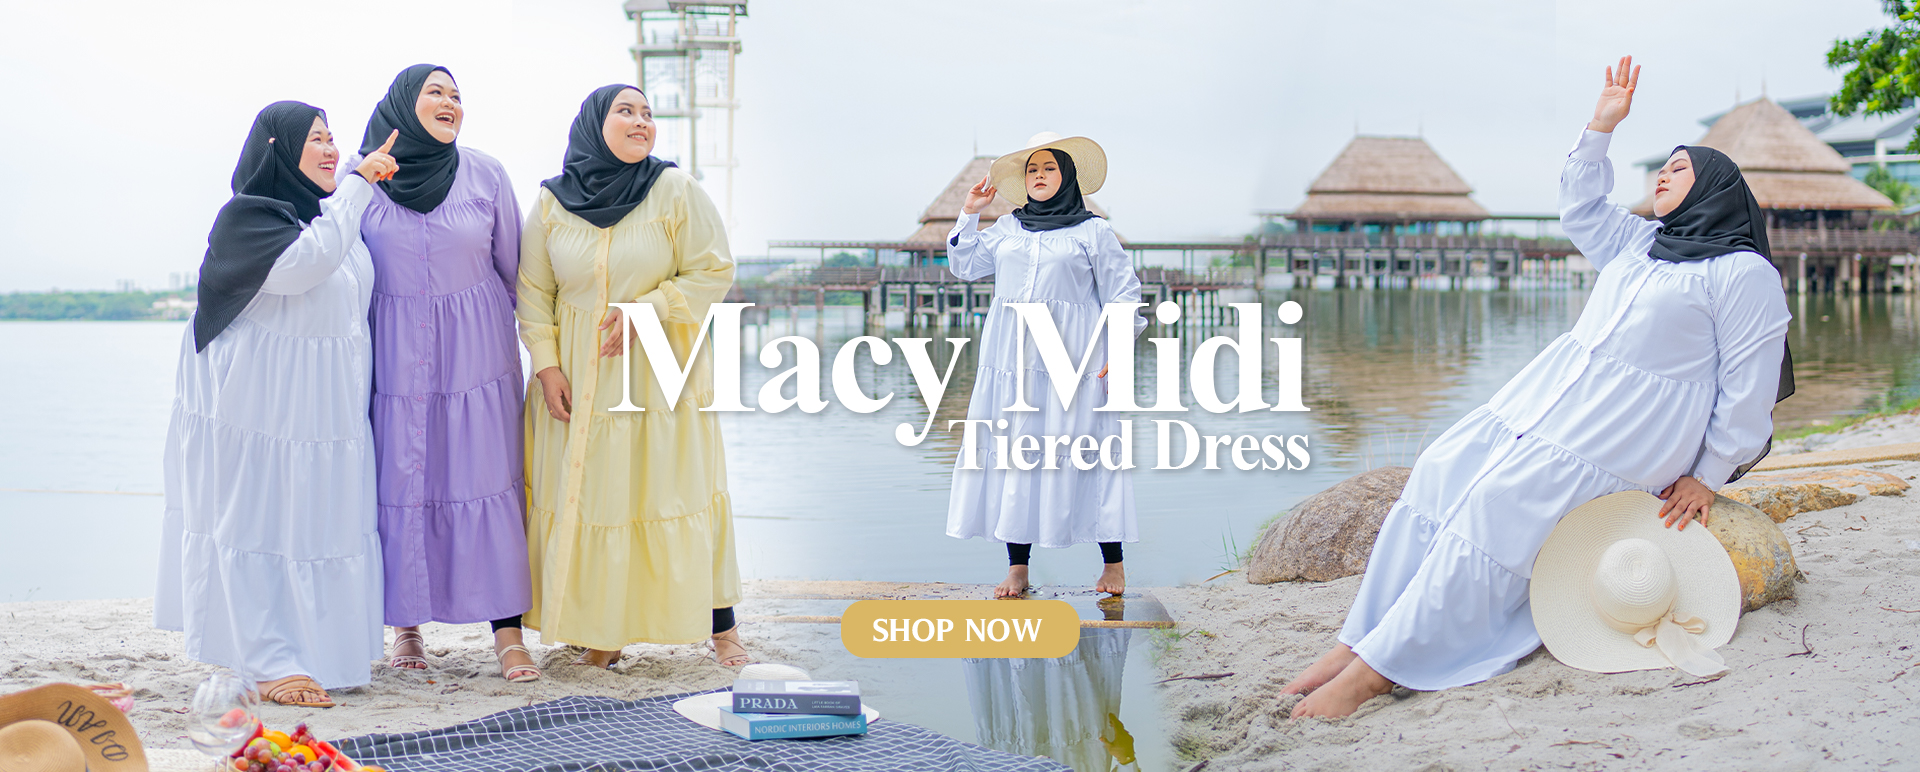 Macy Midi Tiered Dress